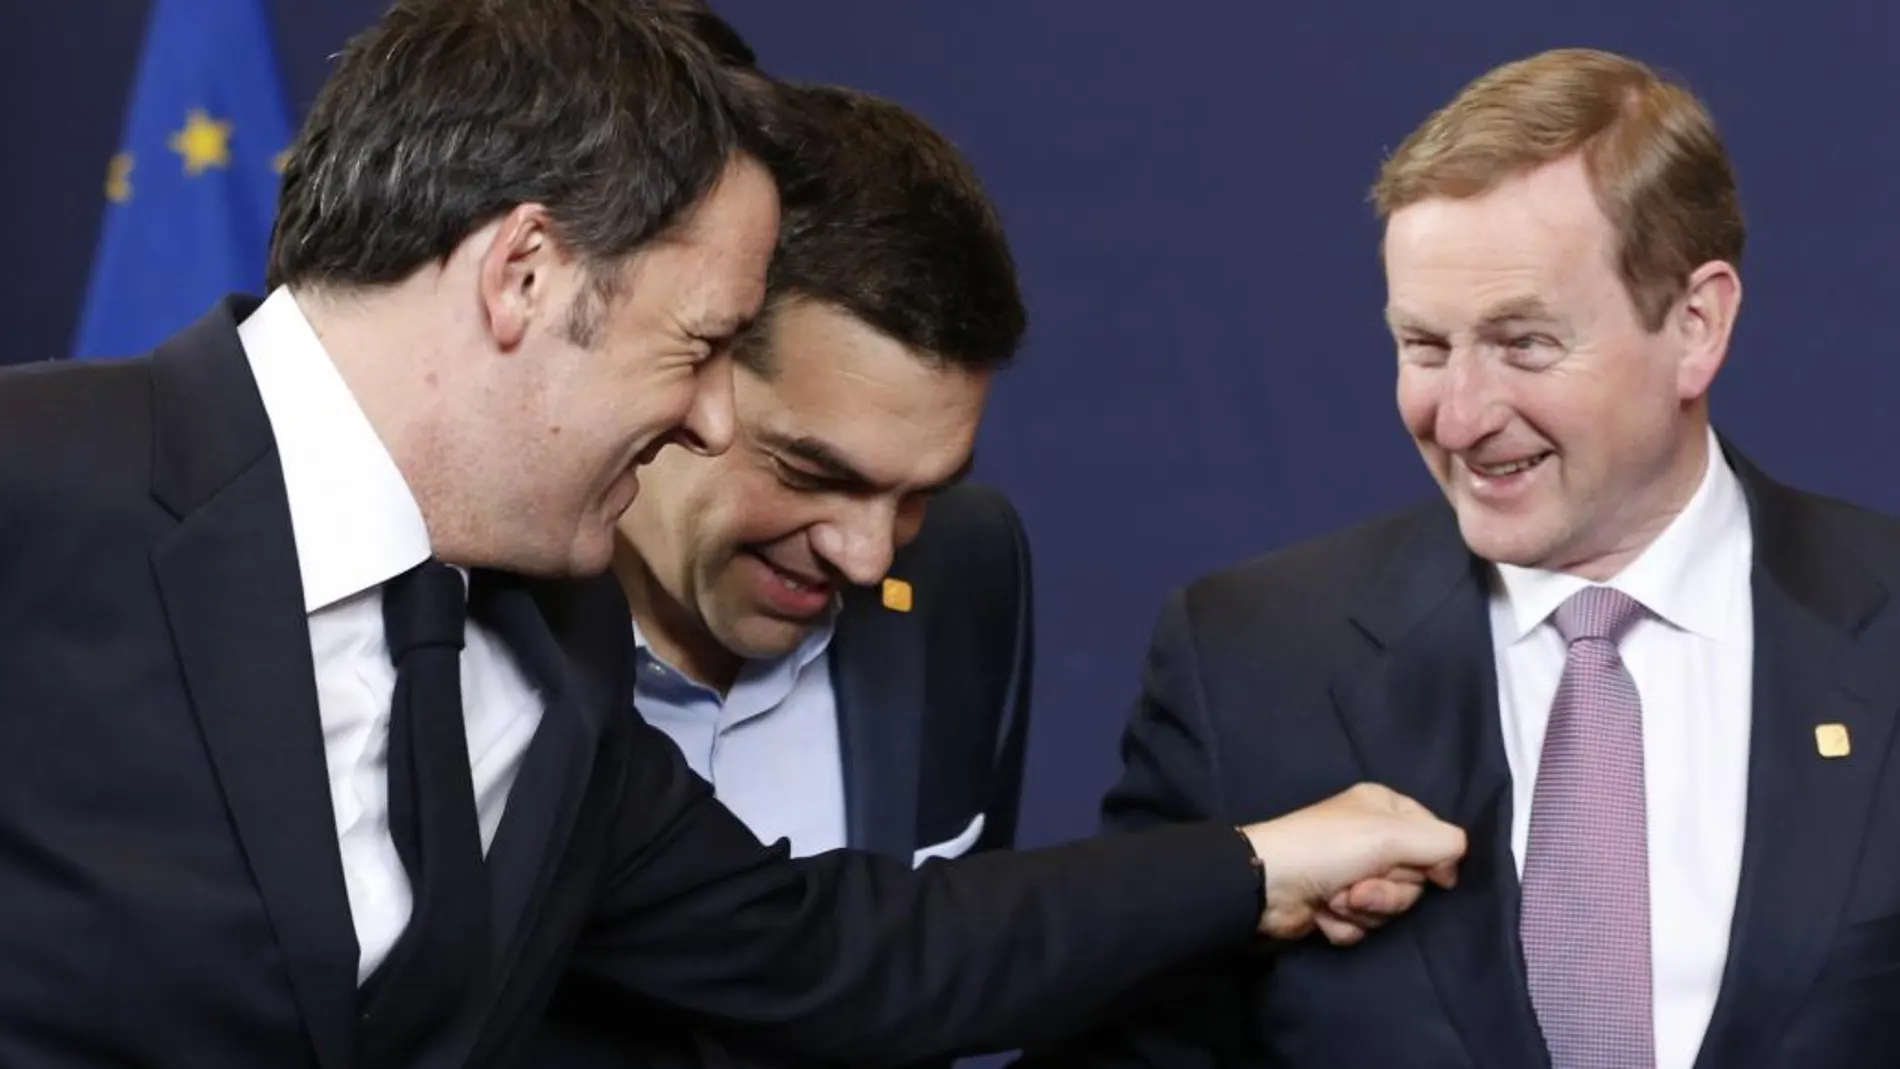 El primer ministro italiano, Matteo Renzi, bromea con sus homólogos griego e irlandes. Alexis Tsipras y Enda Kenny en Bruselas